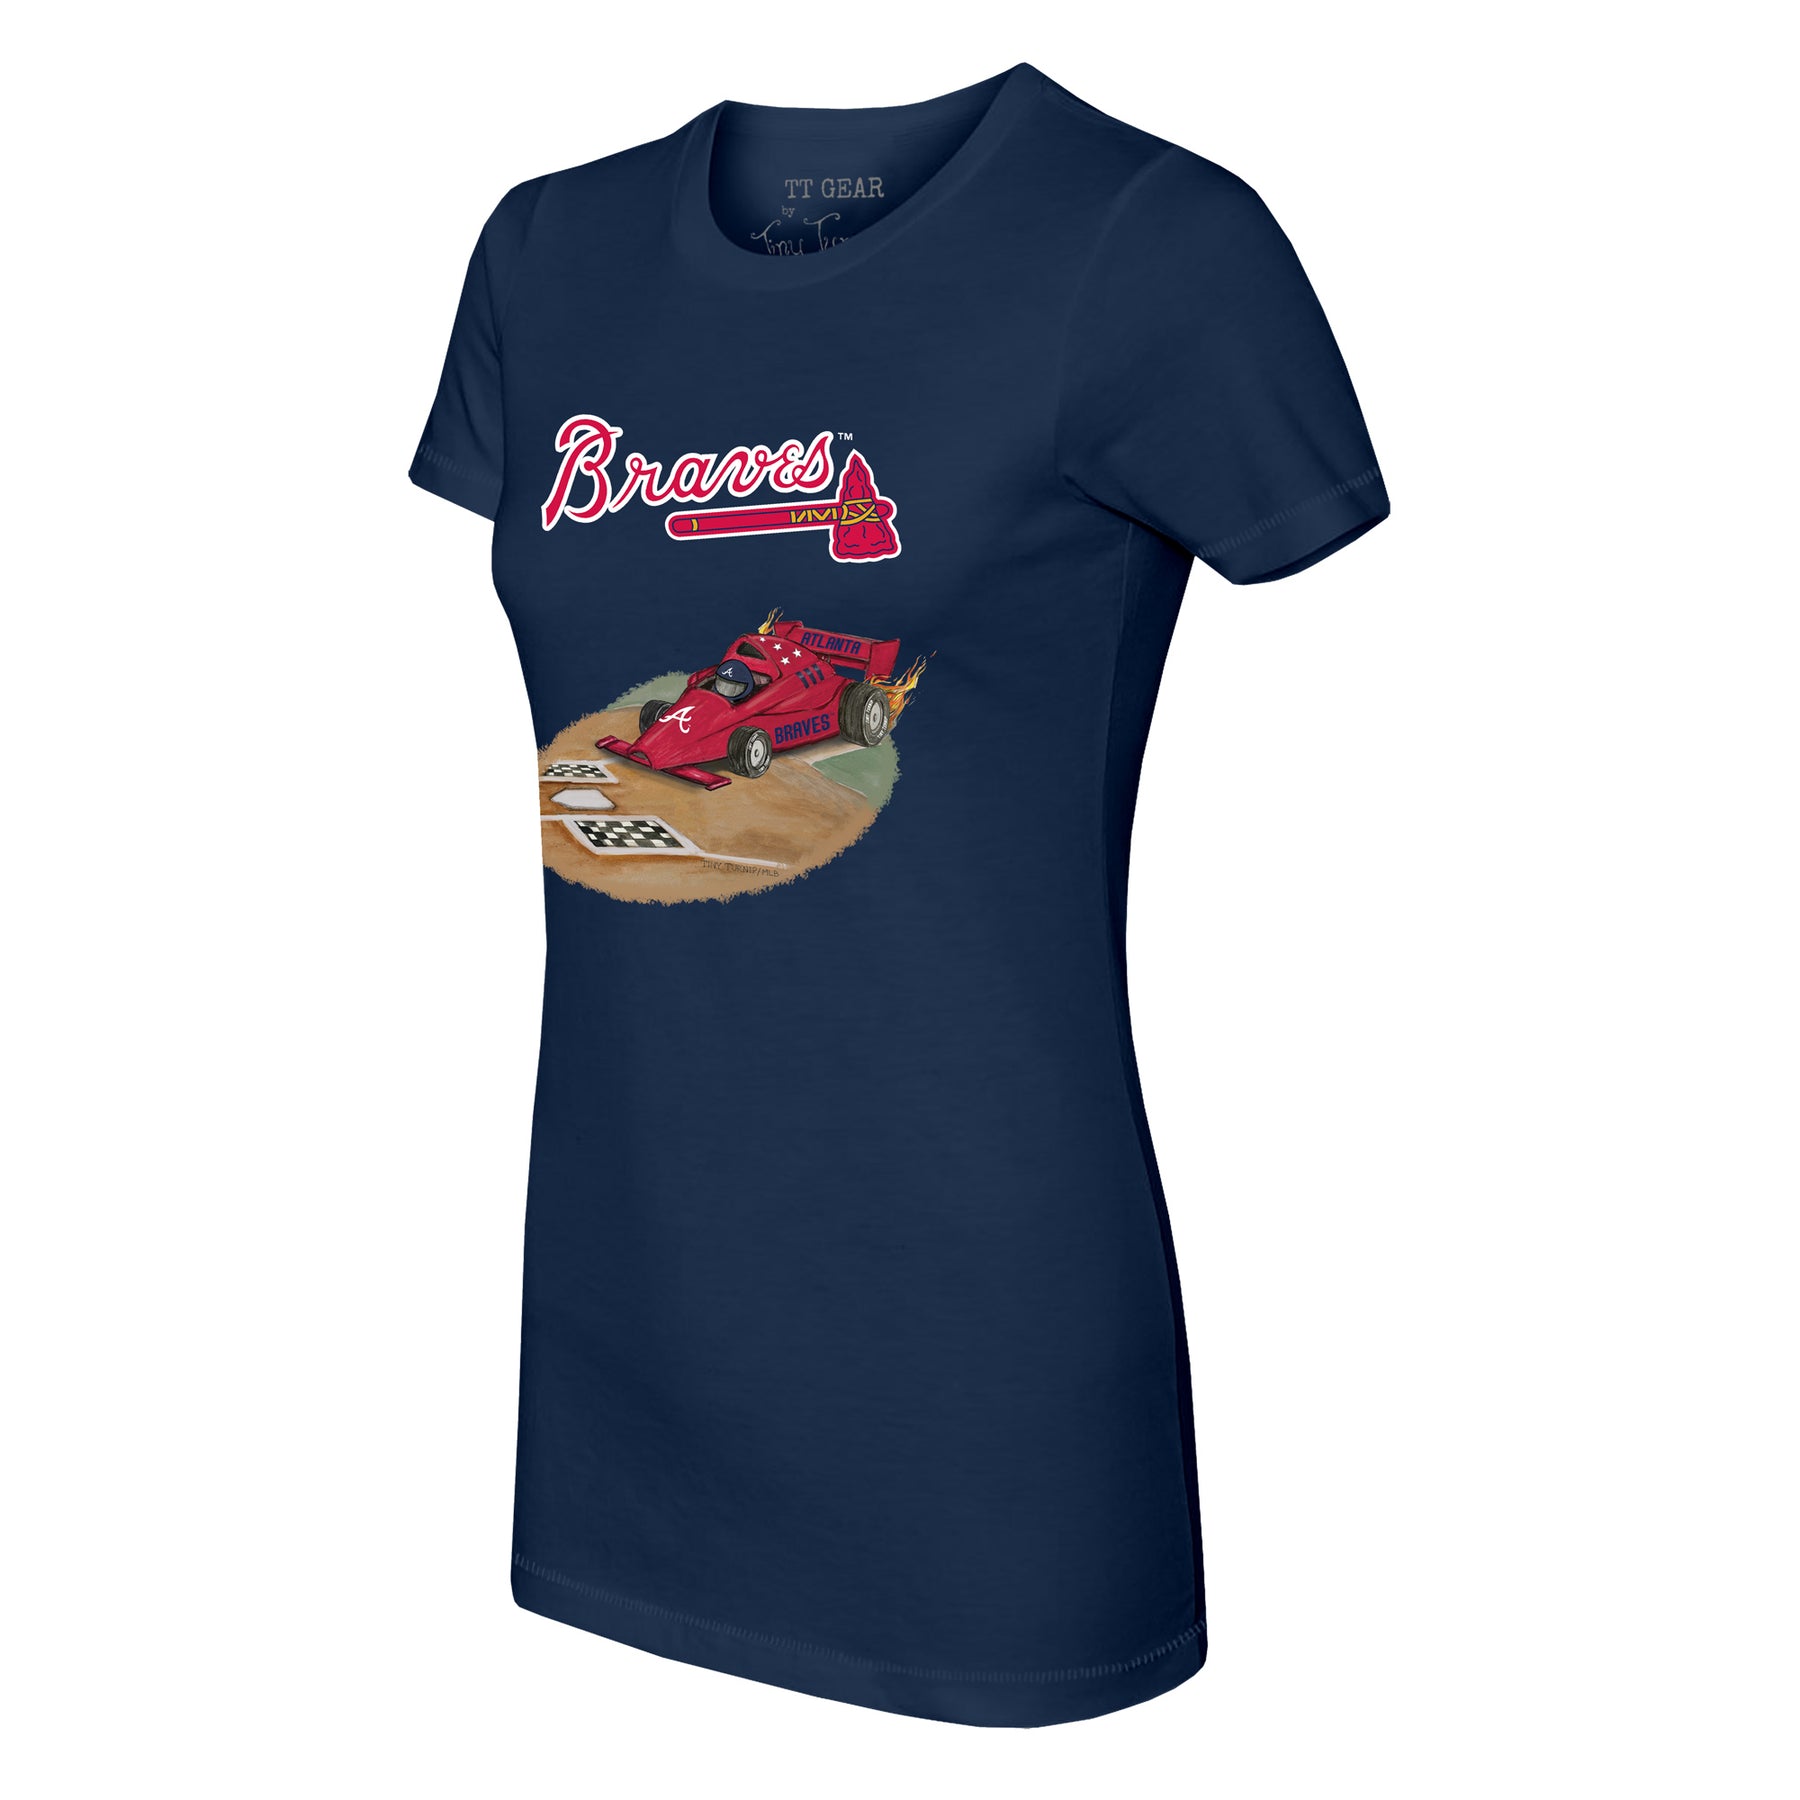 Atlanta Braves Race Car Tee Shirt